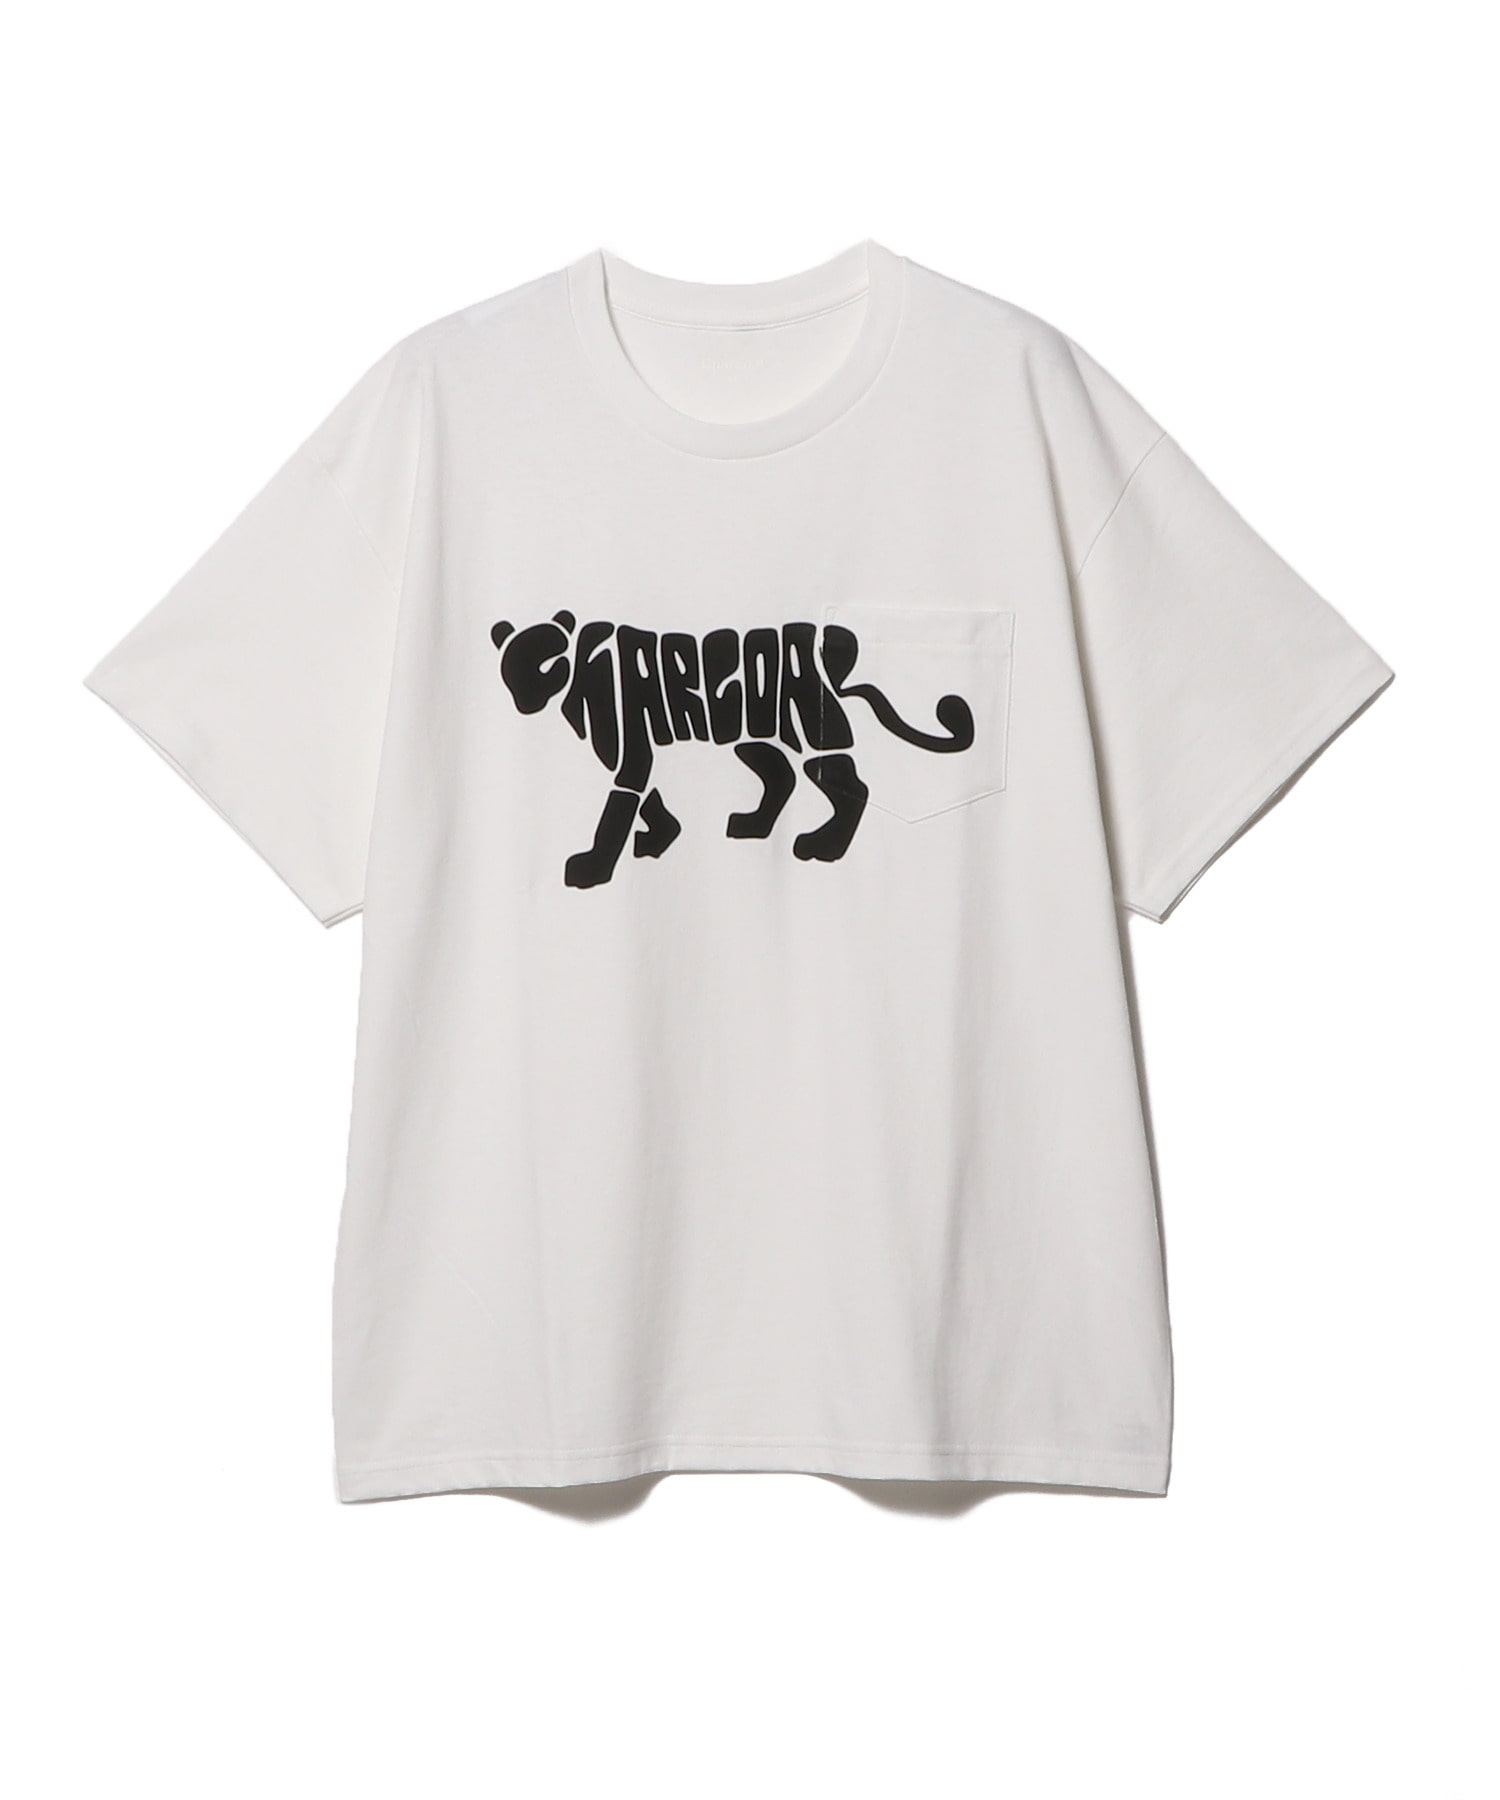 Charcoal / レオパードロゴTシャツ